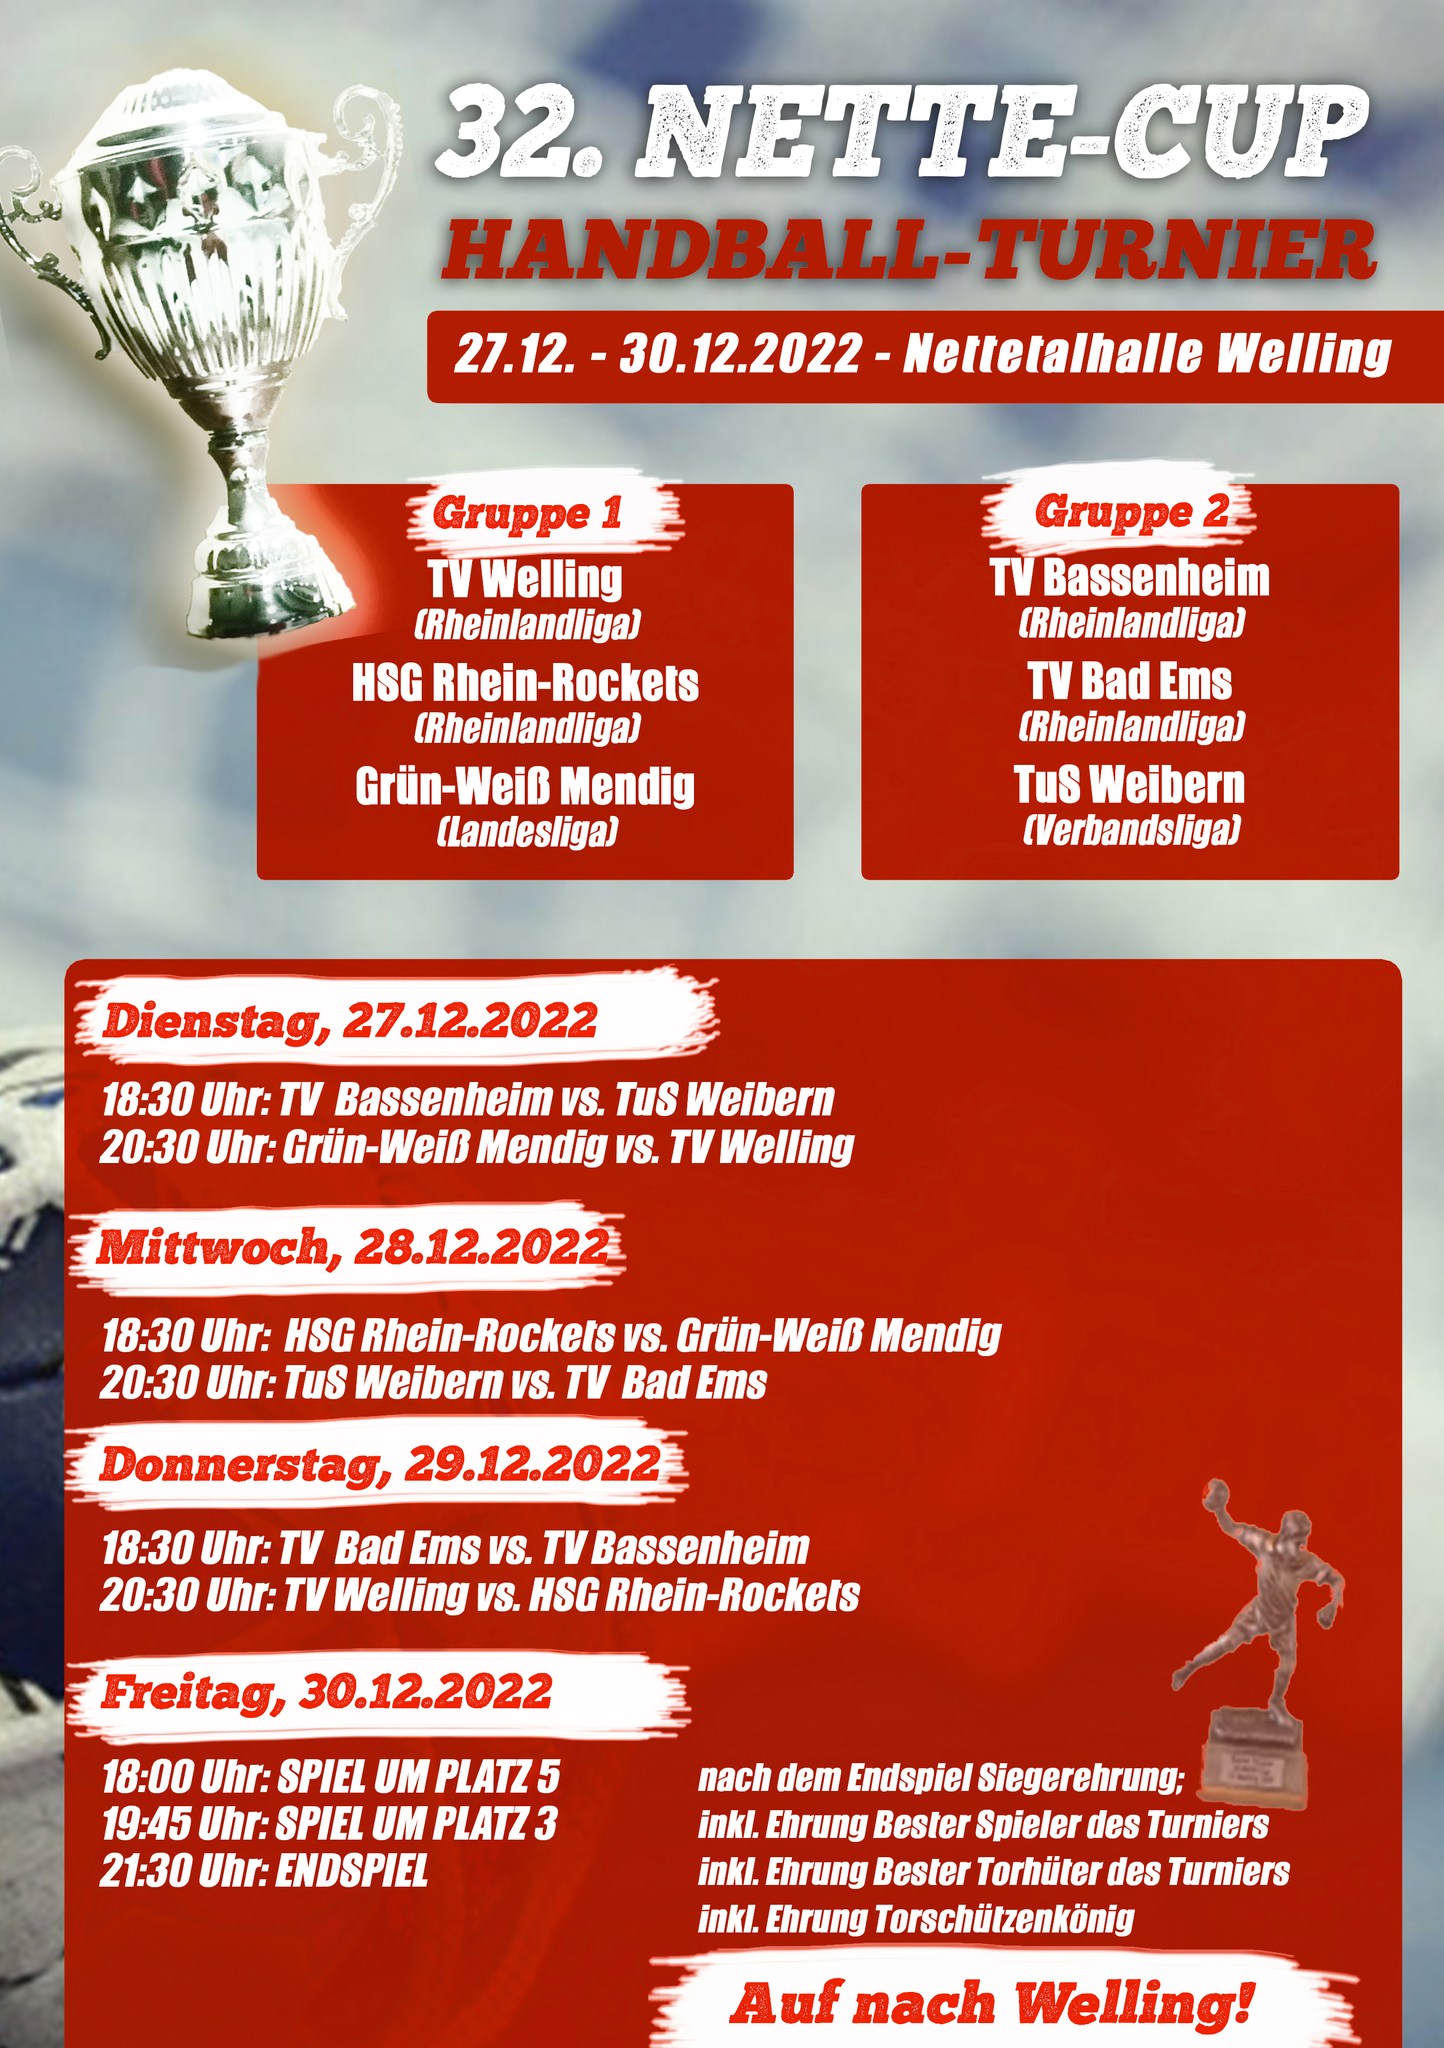 You are currently viewing Endlich wieder Nette-Cup – Handballturnier